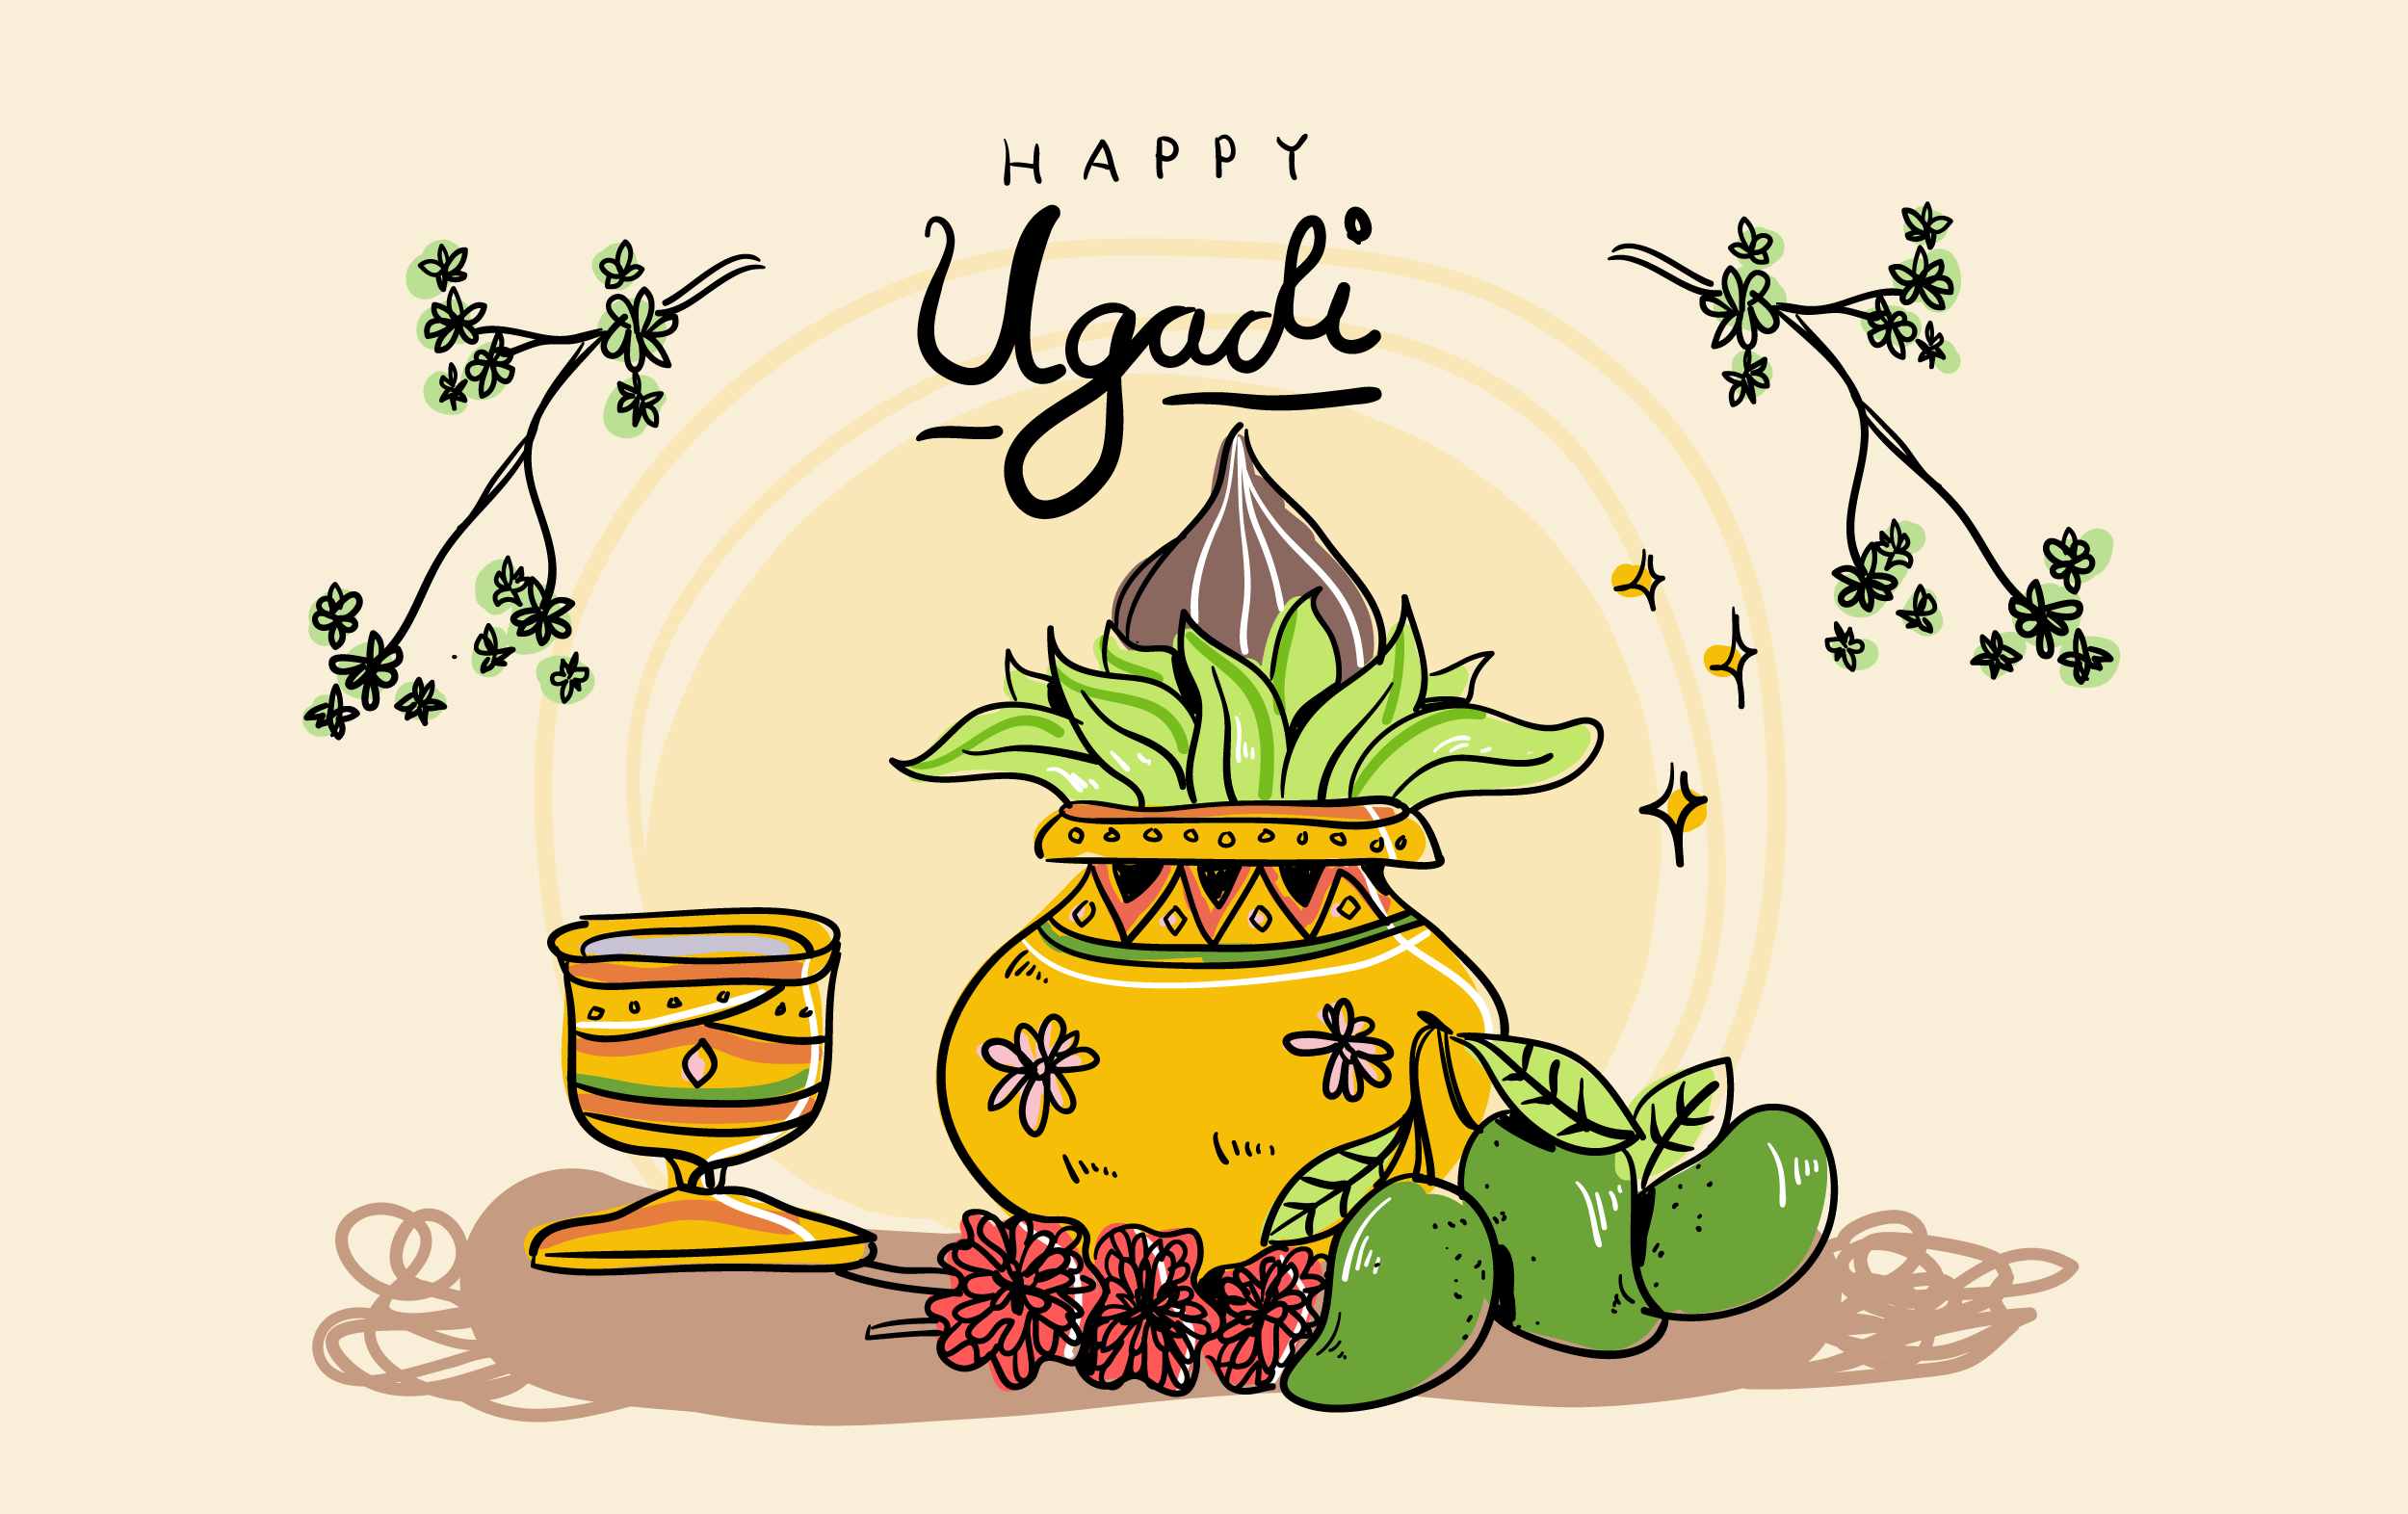 Với nền tảng vẽ tay và vector hình minh họa, bạn sẽ được thưởng thức một bức tranh tuyệt đẹp về Tết Hindu mới - Ugadi. Hình ảnh chất lượng cao này sẽ đưa bạn vào thế giới đầy màu sắc và hoa mỹ của ngày lễ tôn vinh truyền thống và văn hóa.